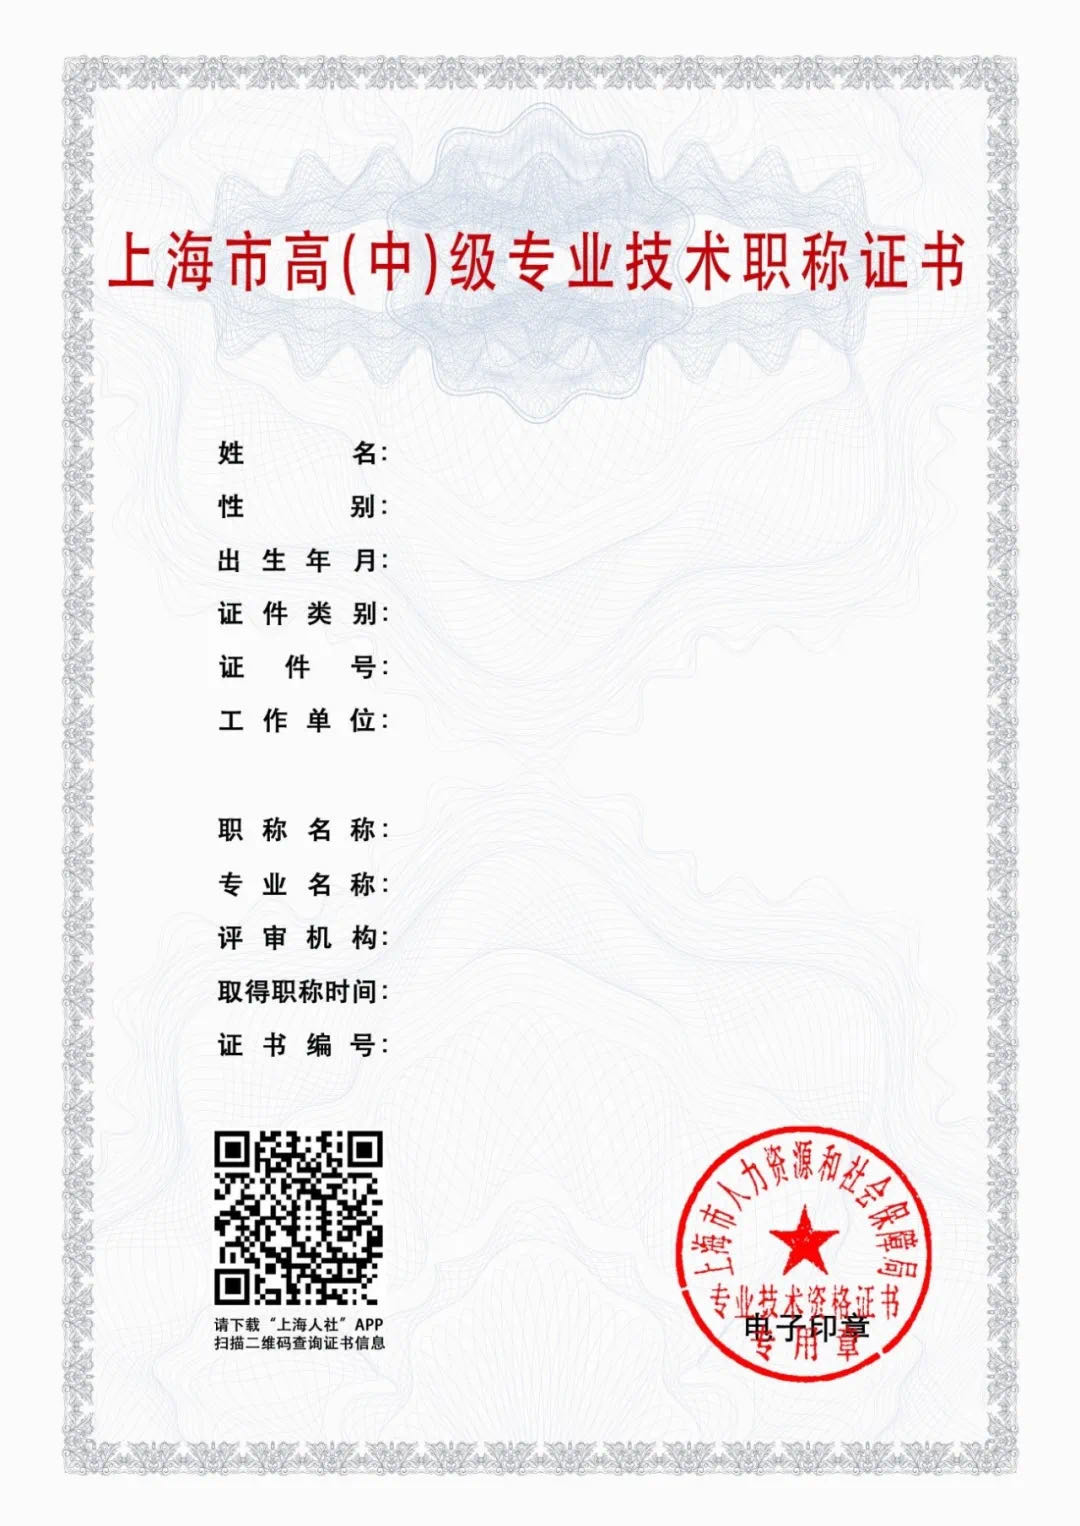 重要通知 | 上海居转户职称证书启用电子证书形式